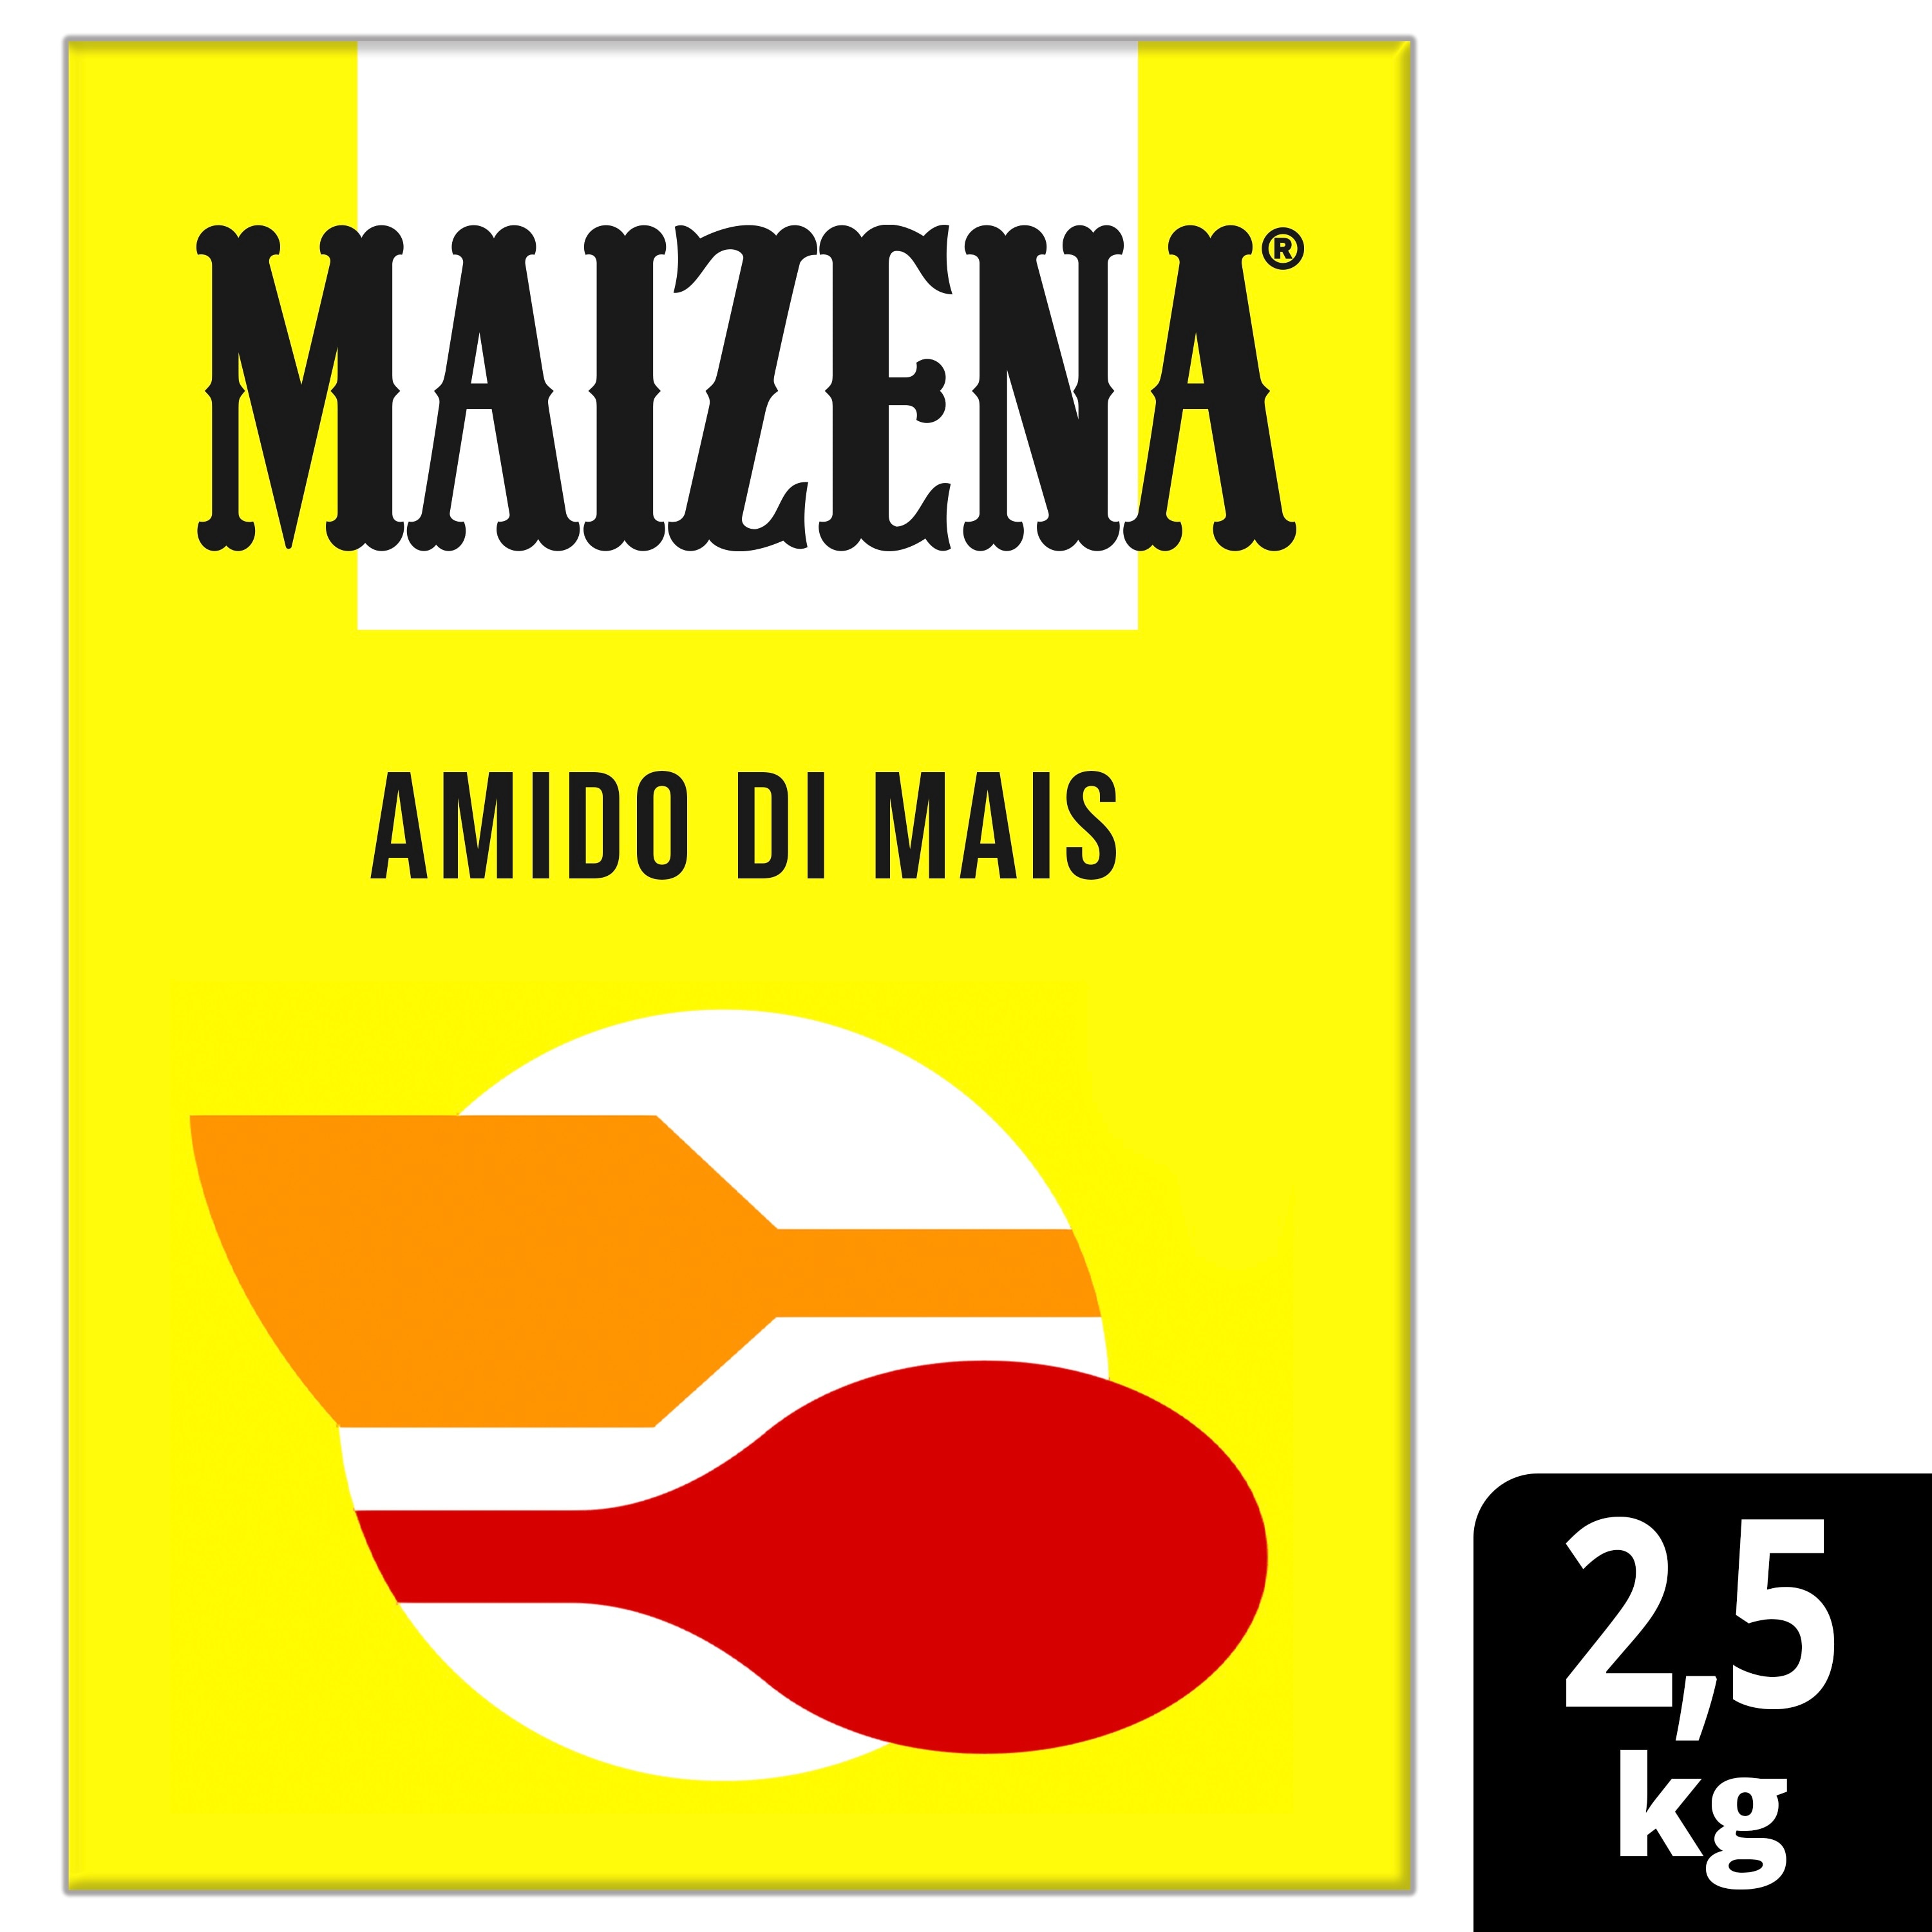 Maizena Amido di mais 2,5 Kg - Con l’amido di mais Maizena è possibile creare tante nuove ricette senza glutine, sia dolci che salate.